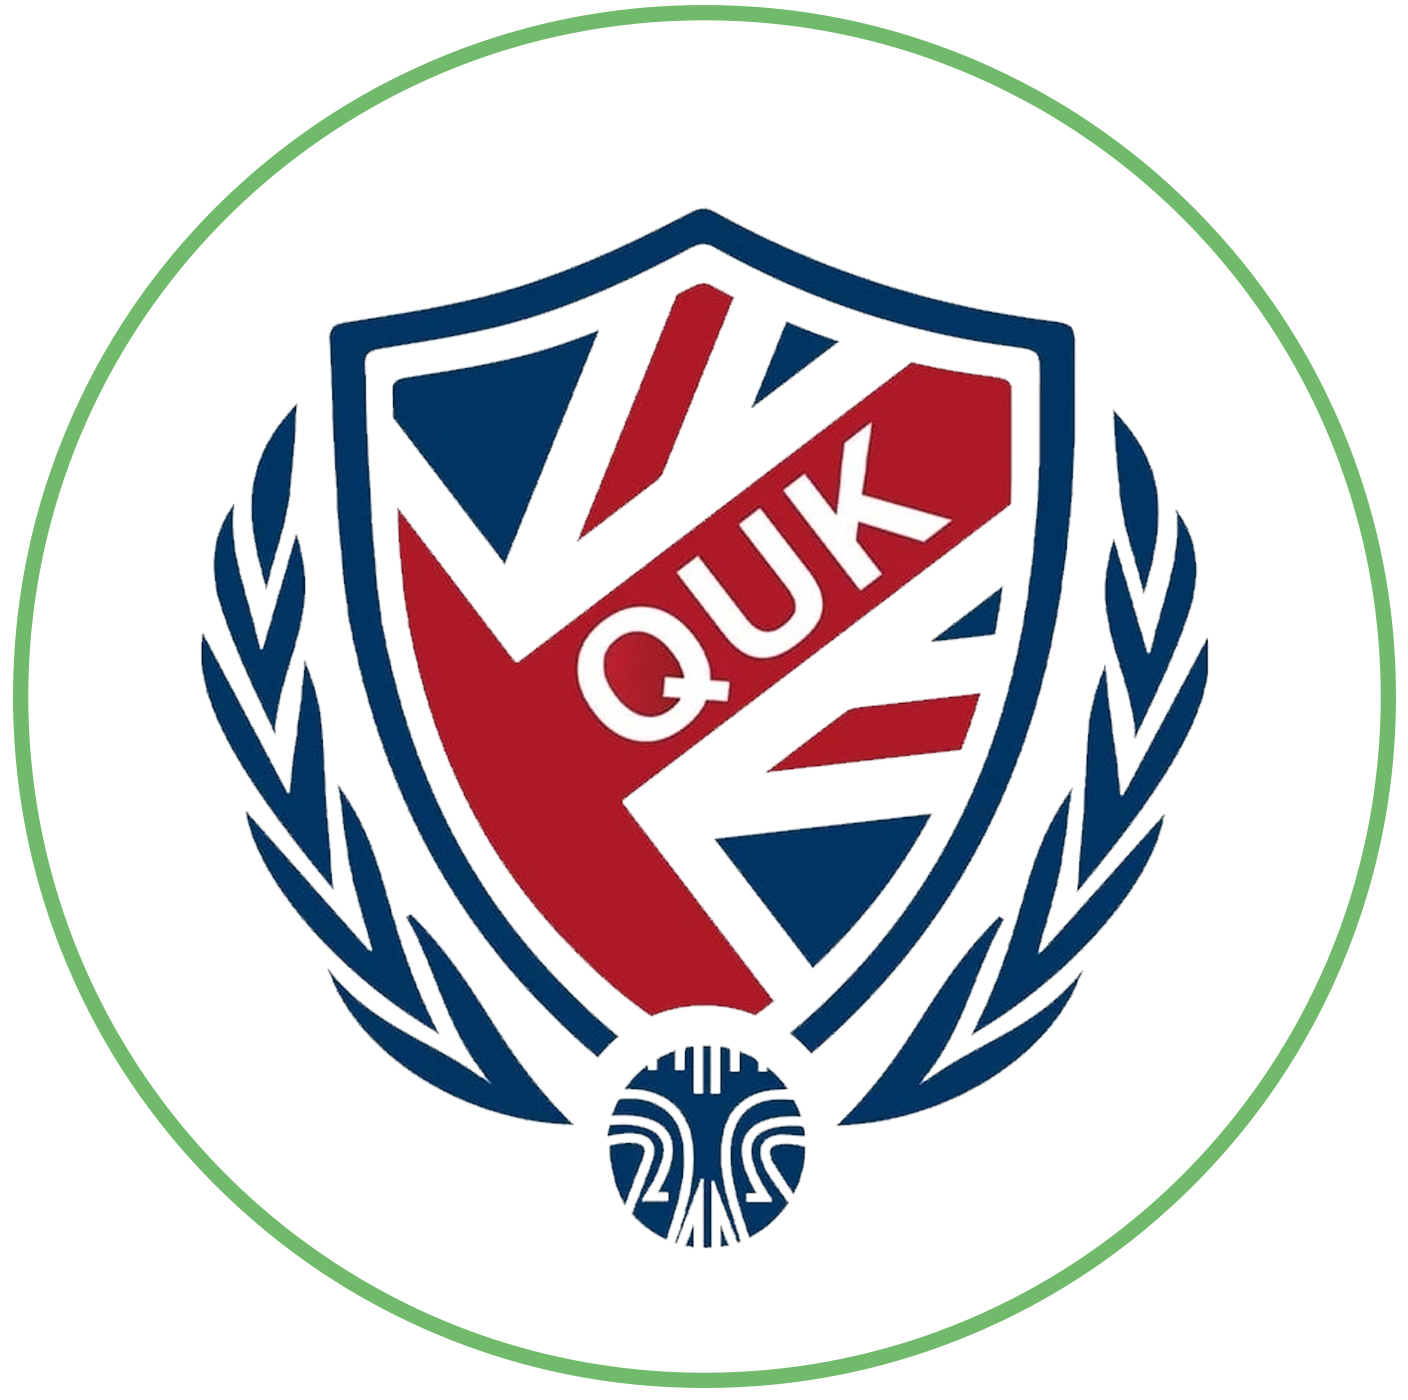 QuadballUK logo